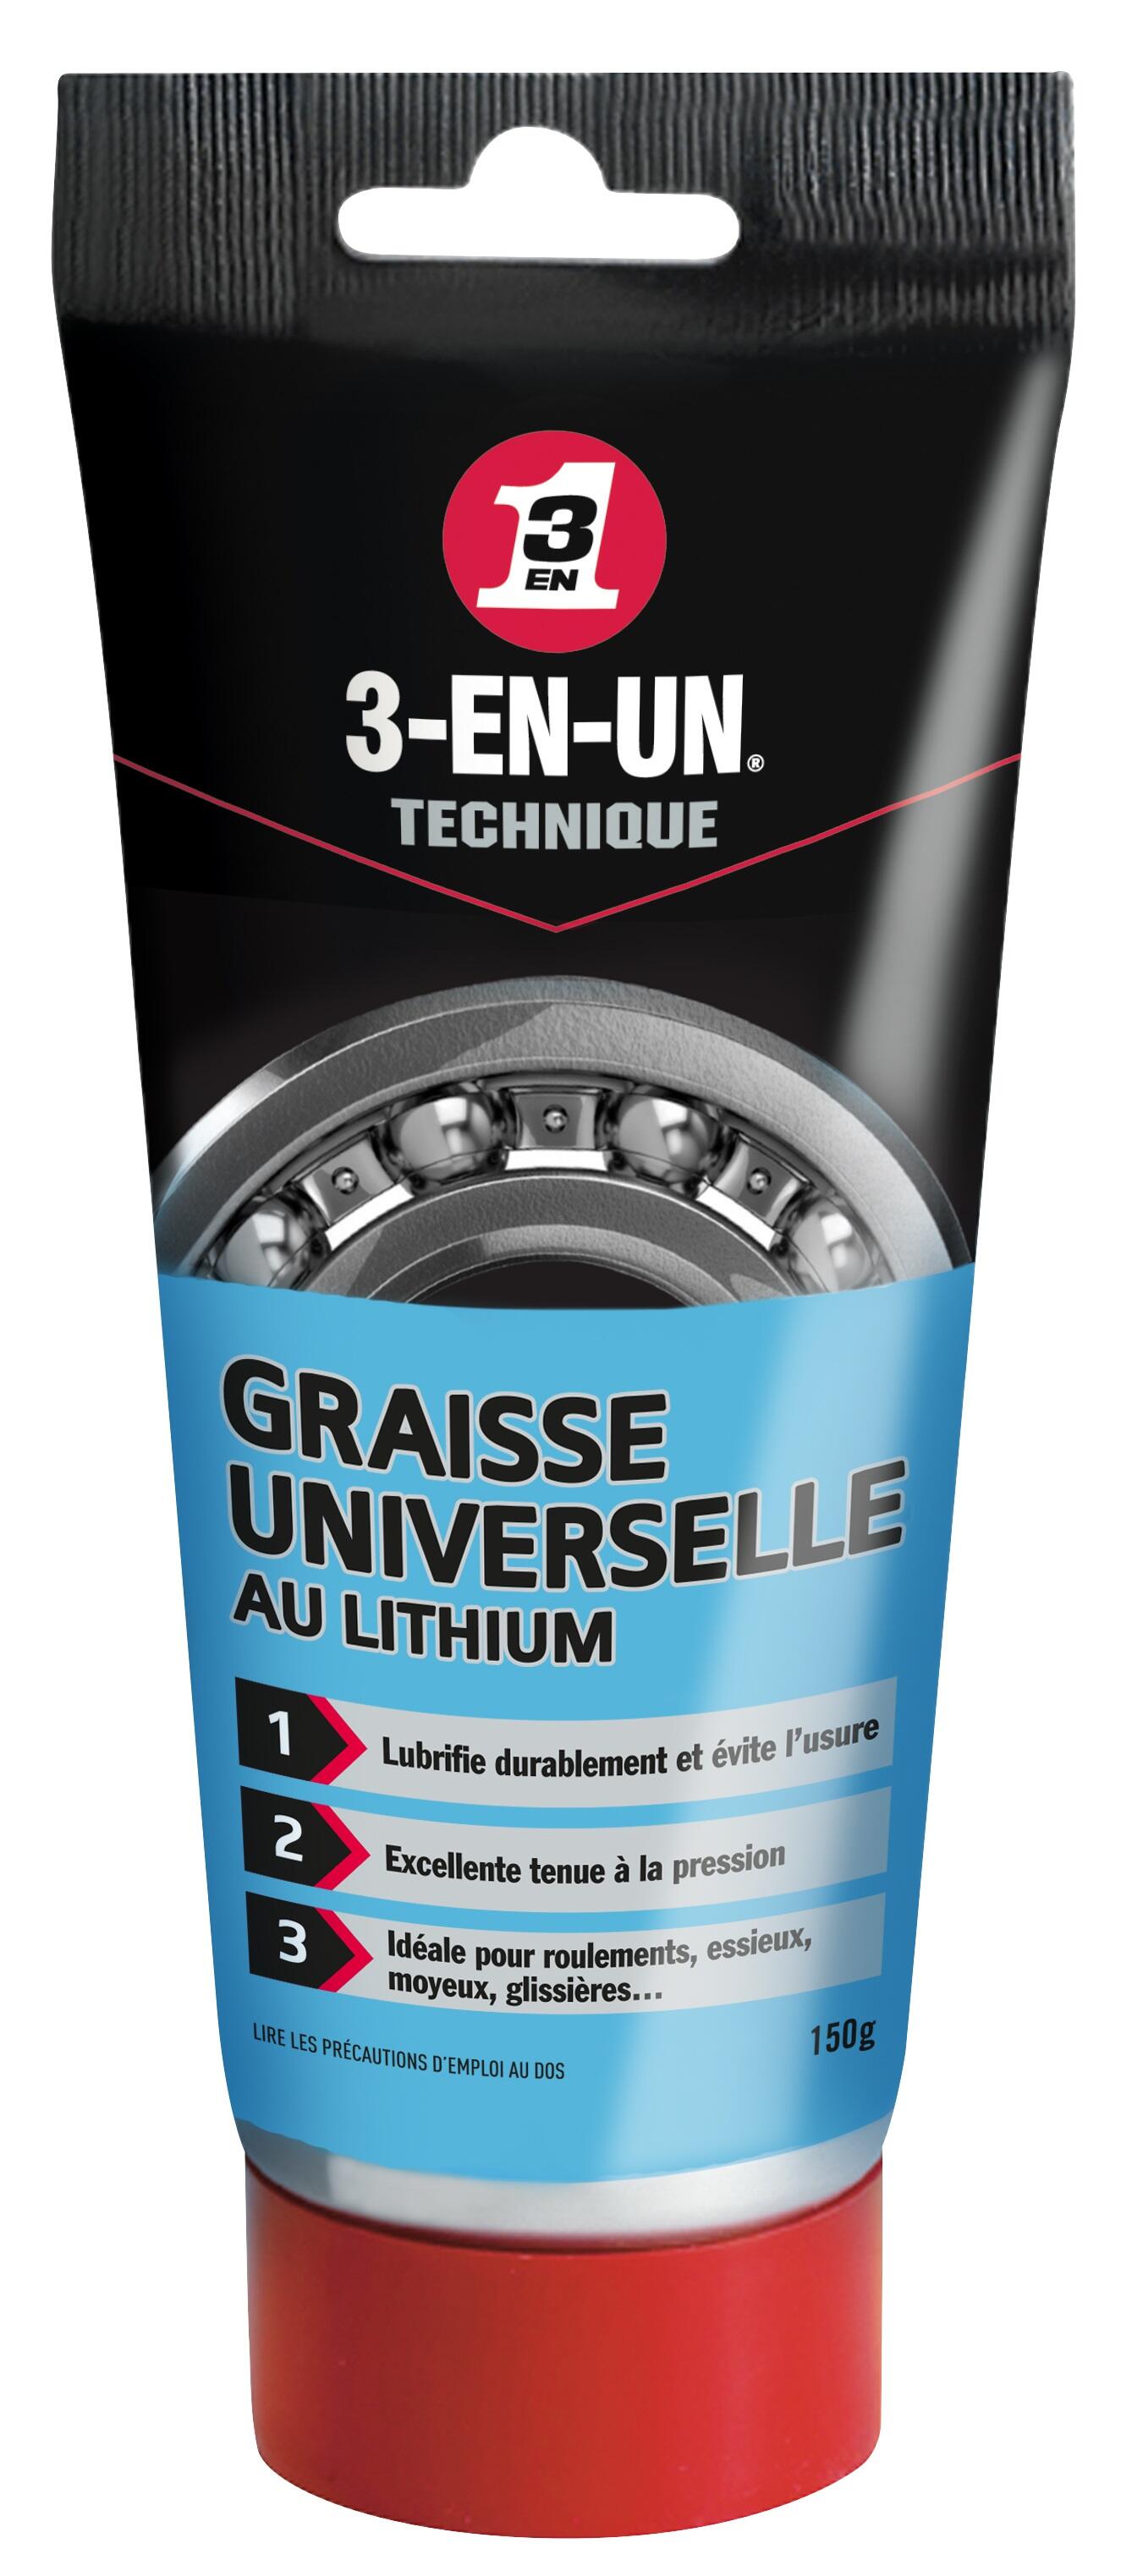 Graisse universelle au lithium en tube, 150 g 3-EN-UN TECHNIQUE